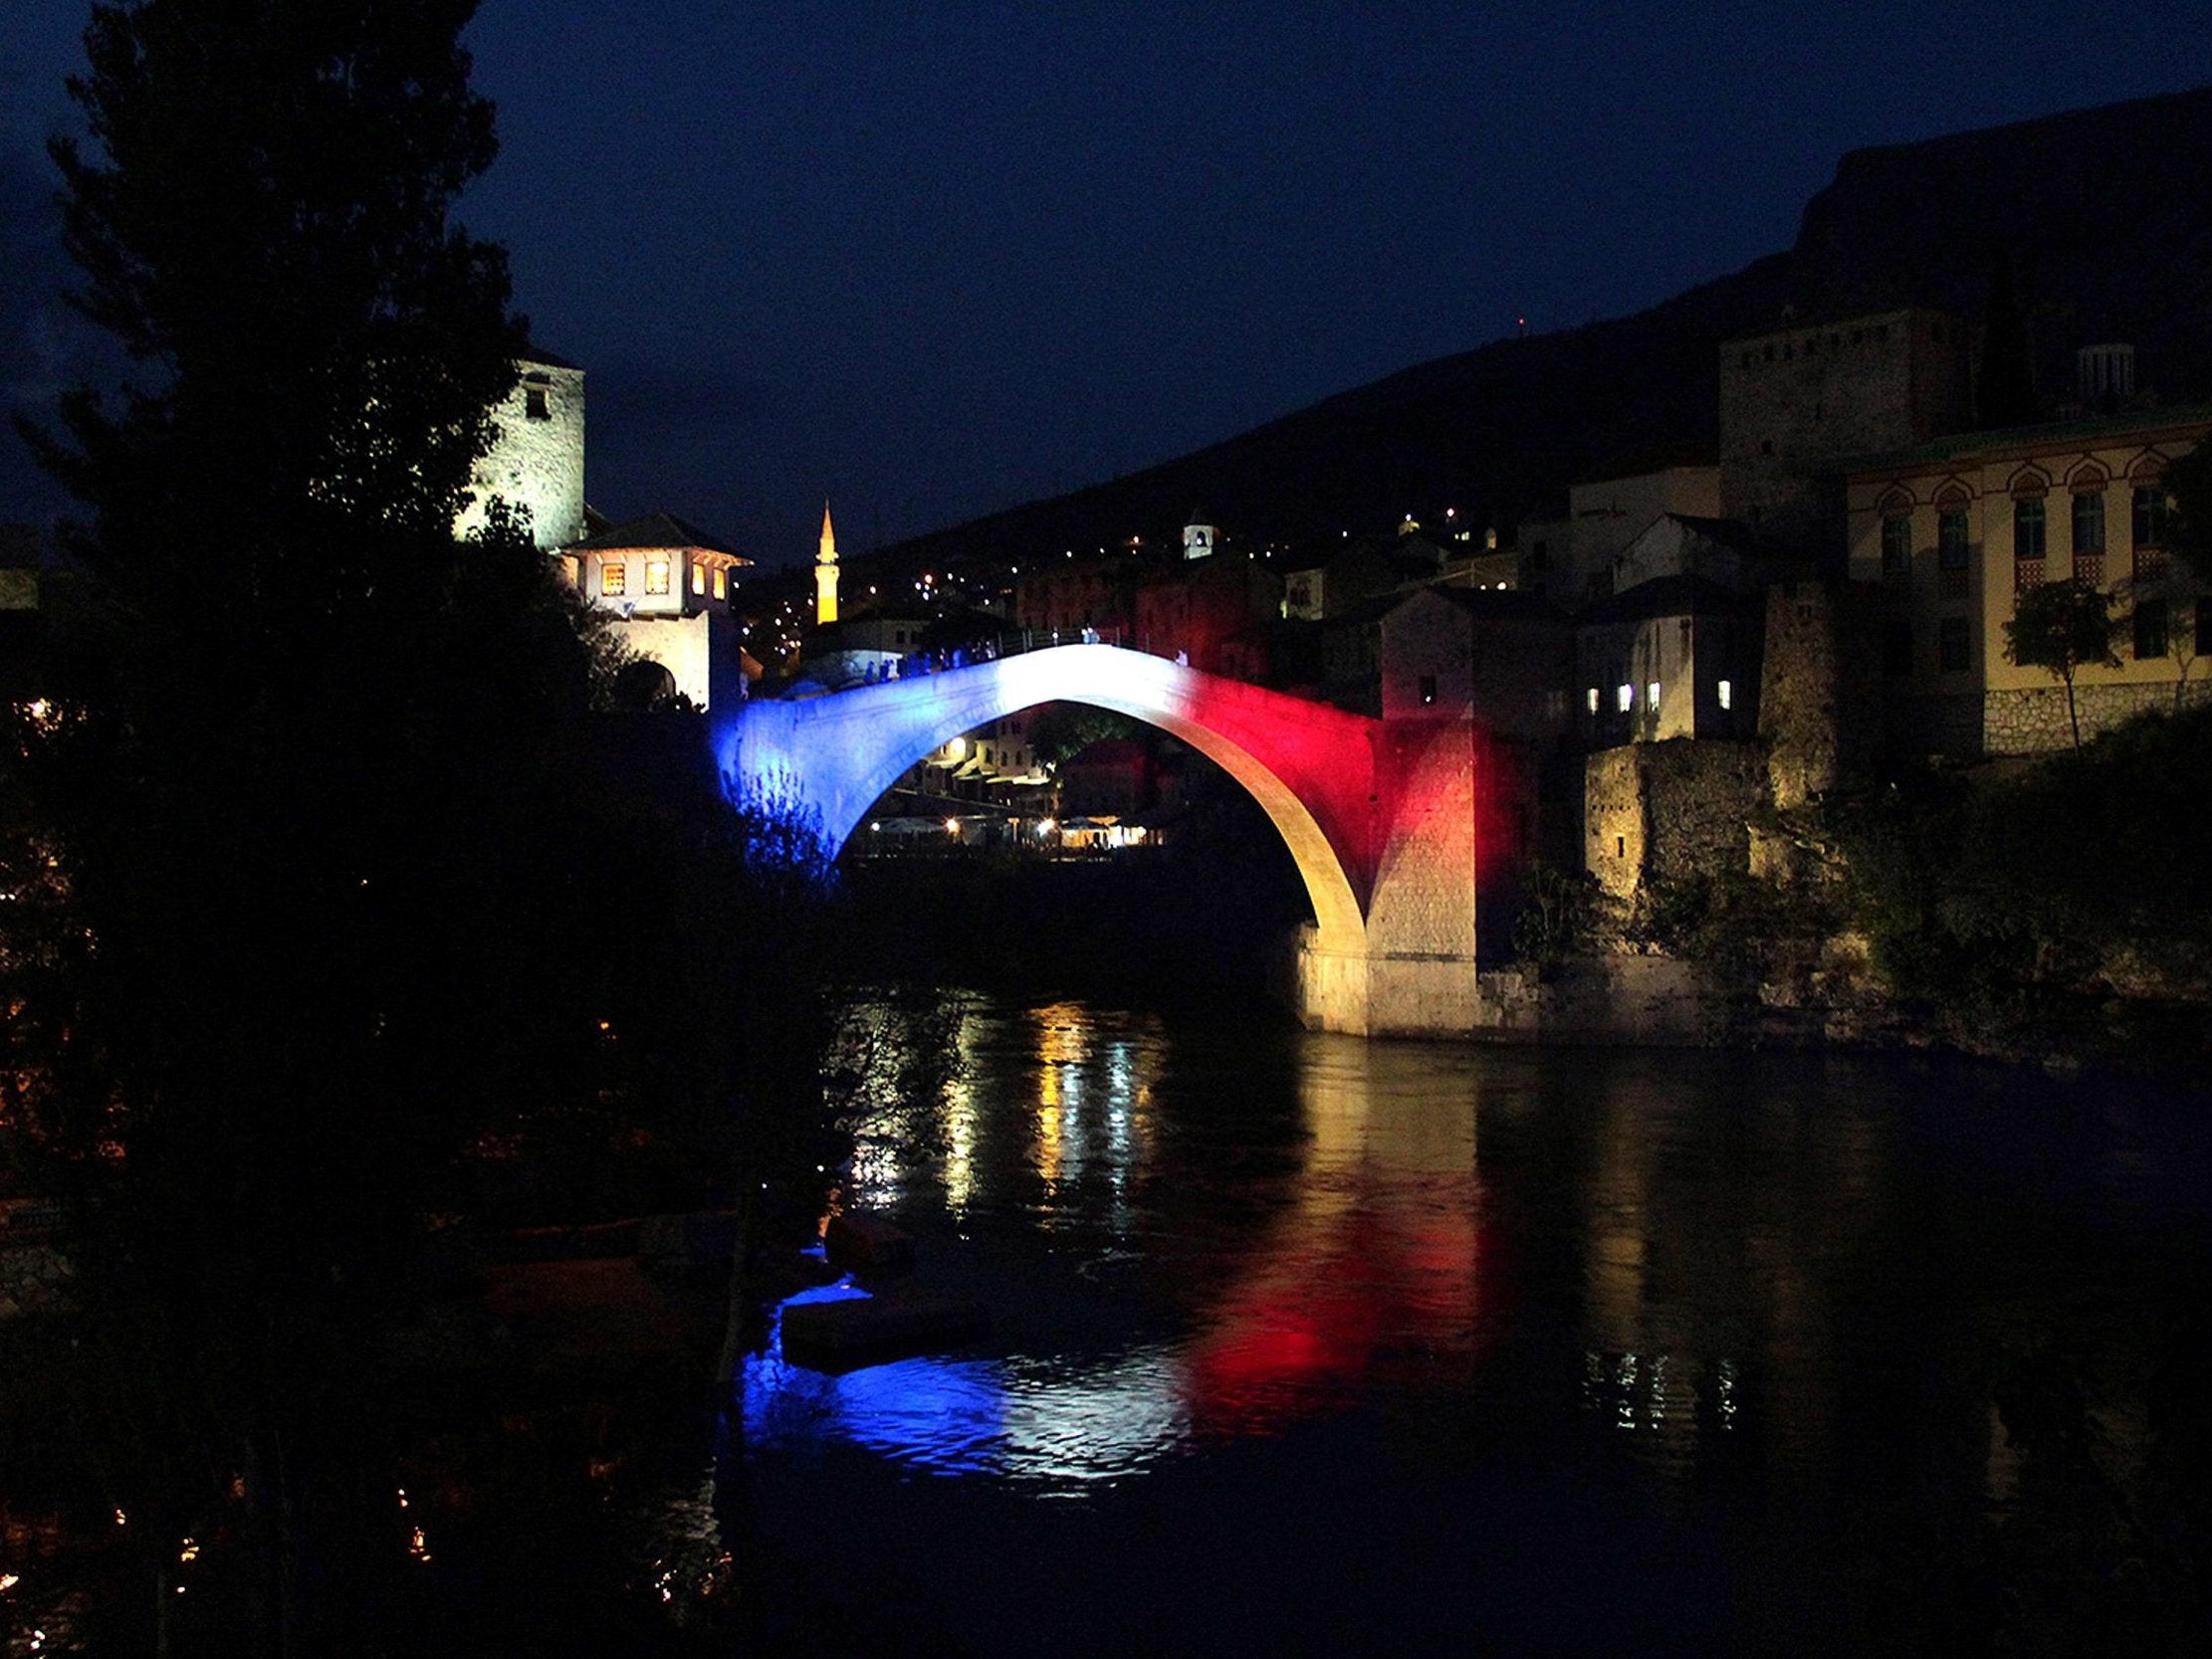 Stari Most bridge, Mostar